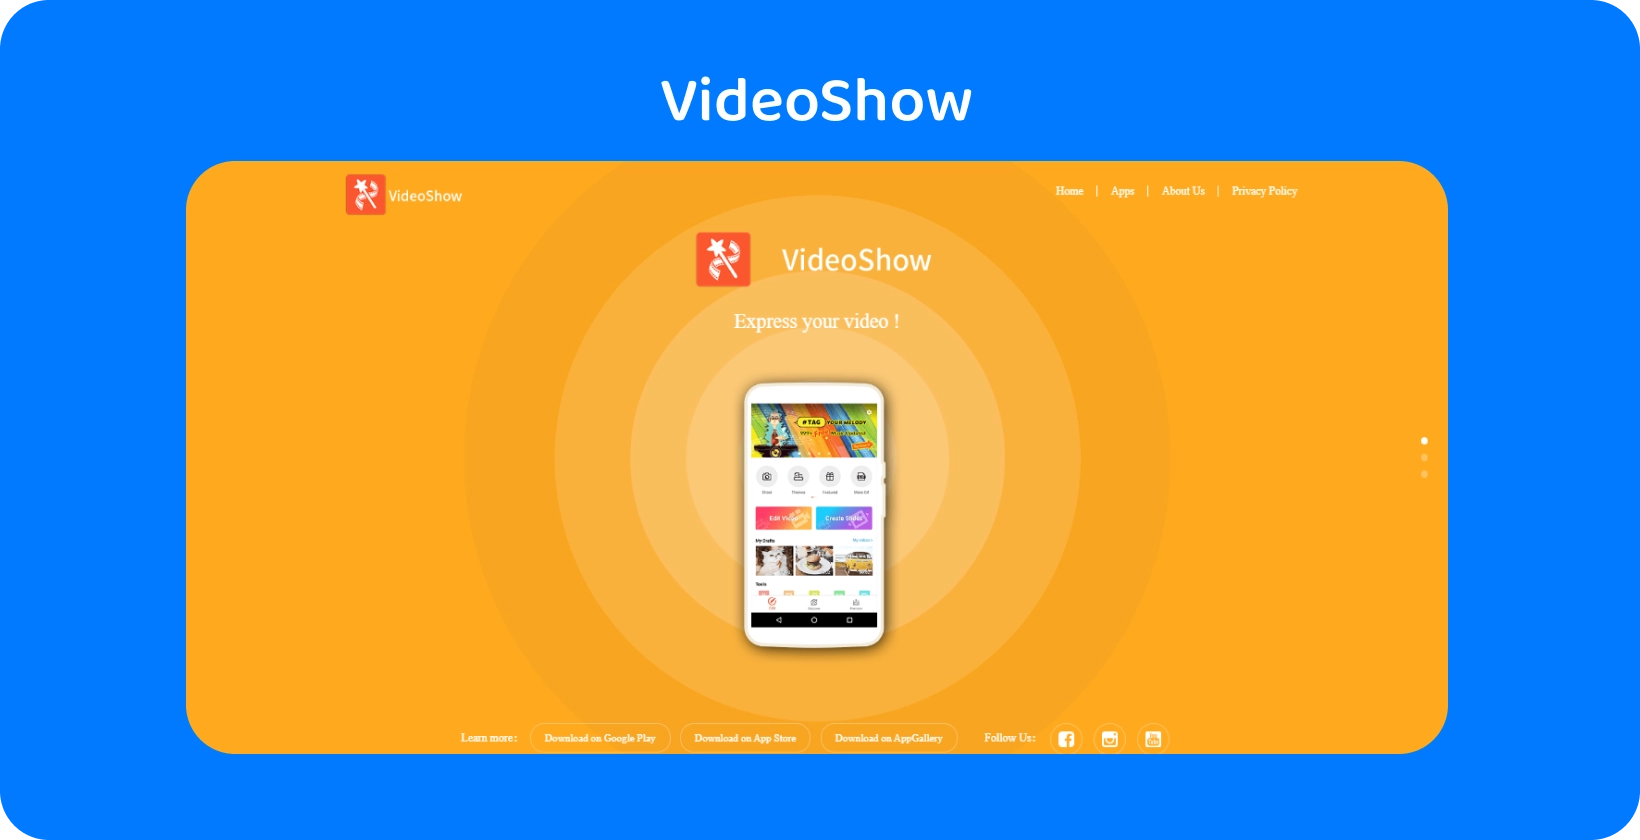 VideoShow interfejs aplikacije na ekranu, nudeći jednostavne alatke za uređivanje video zapisa i funkcije na živopisnoj narandžastoj pozadini.